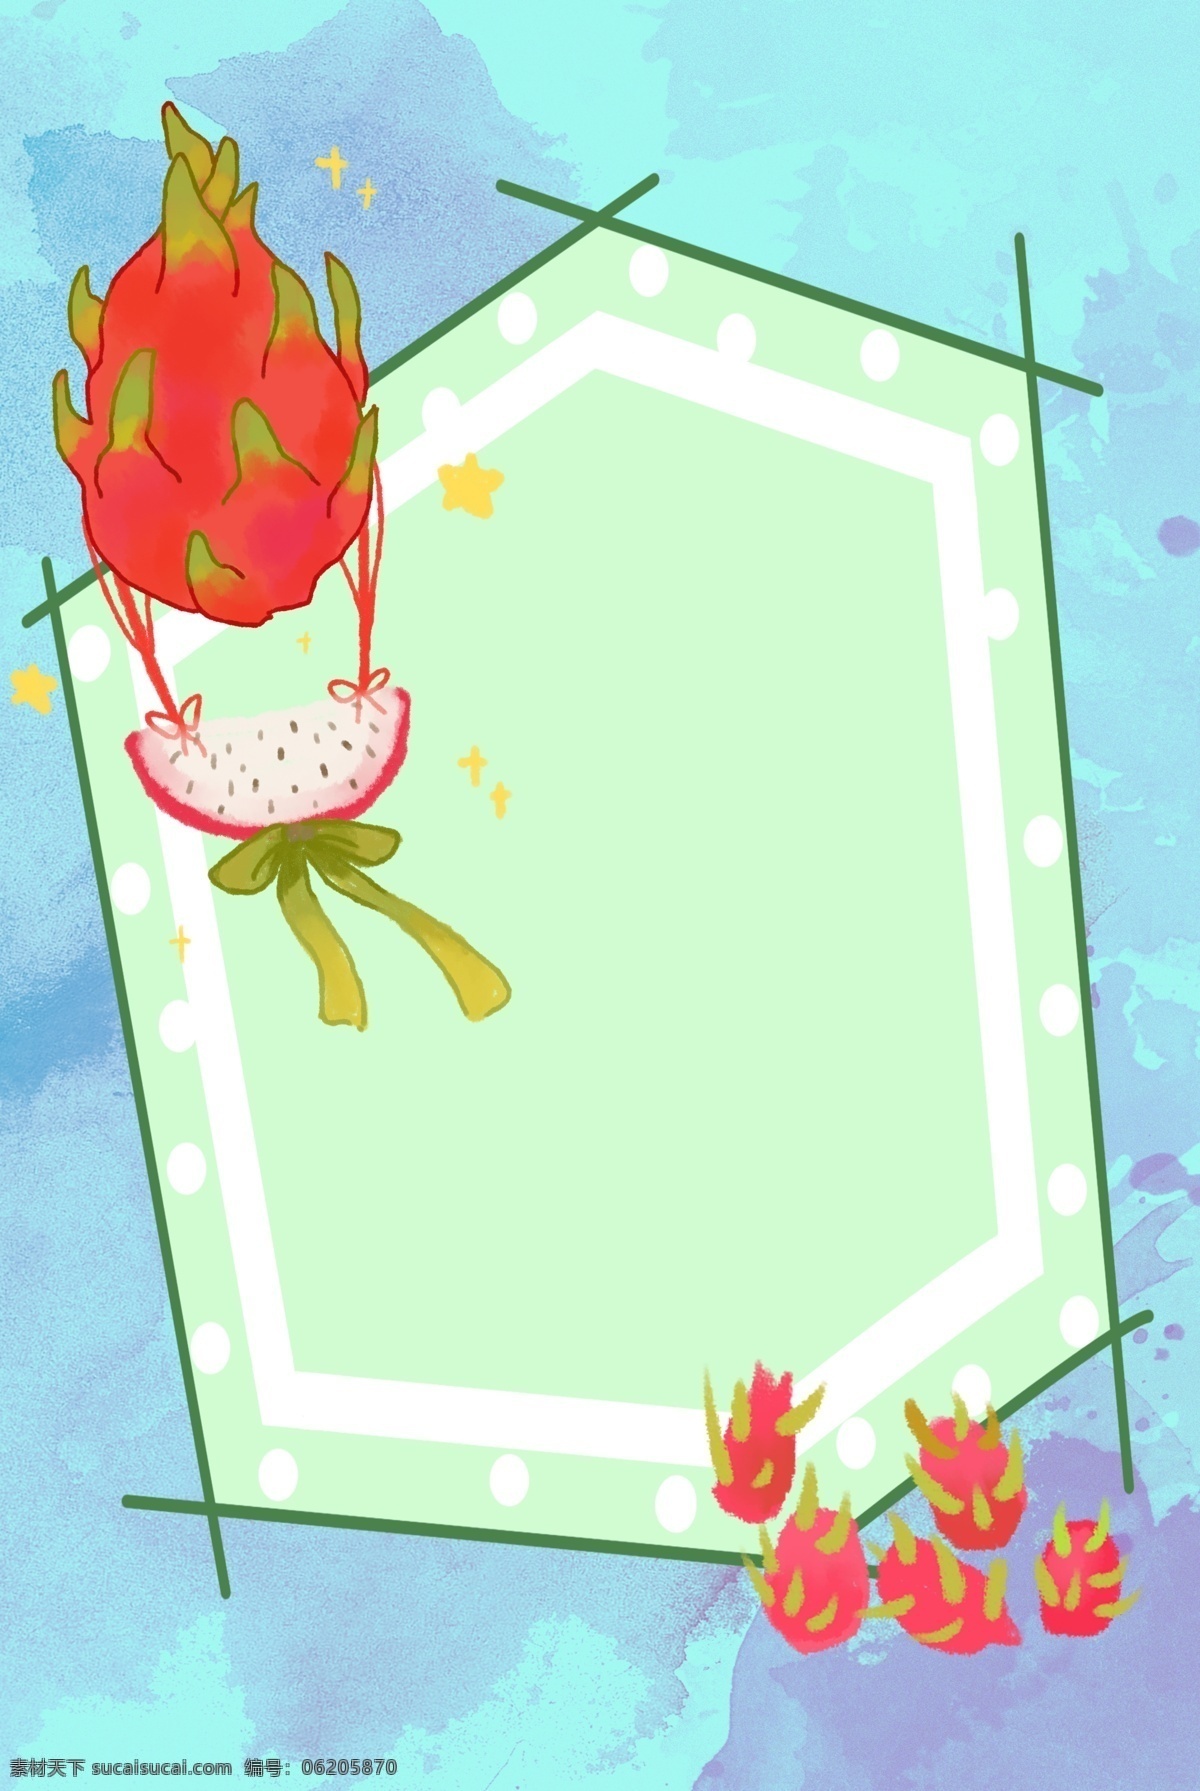 新鲜 火龙果 背景 水果 健康 卡通 手绘 插画 装饰 食品 食材 食物